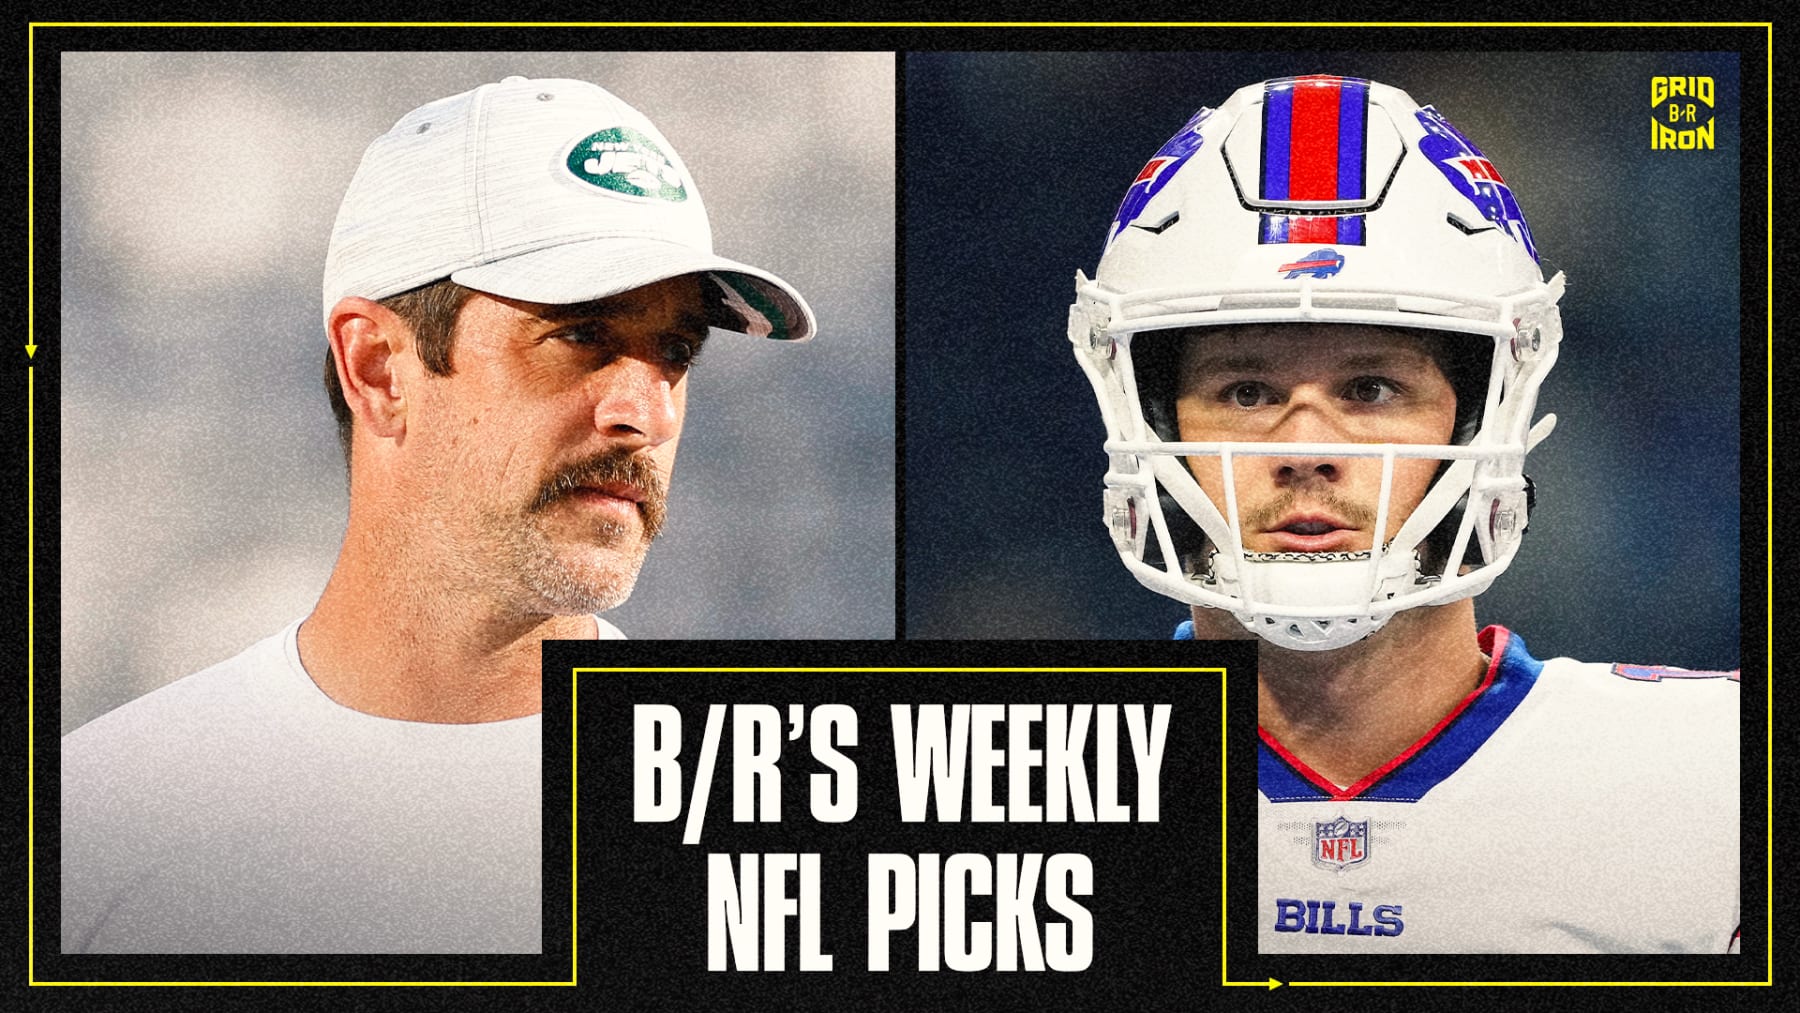 NFL Week 1 odds: Bills slight favourites over Jets on MNF